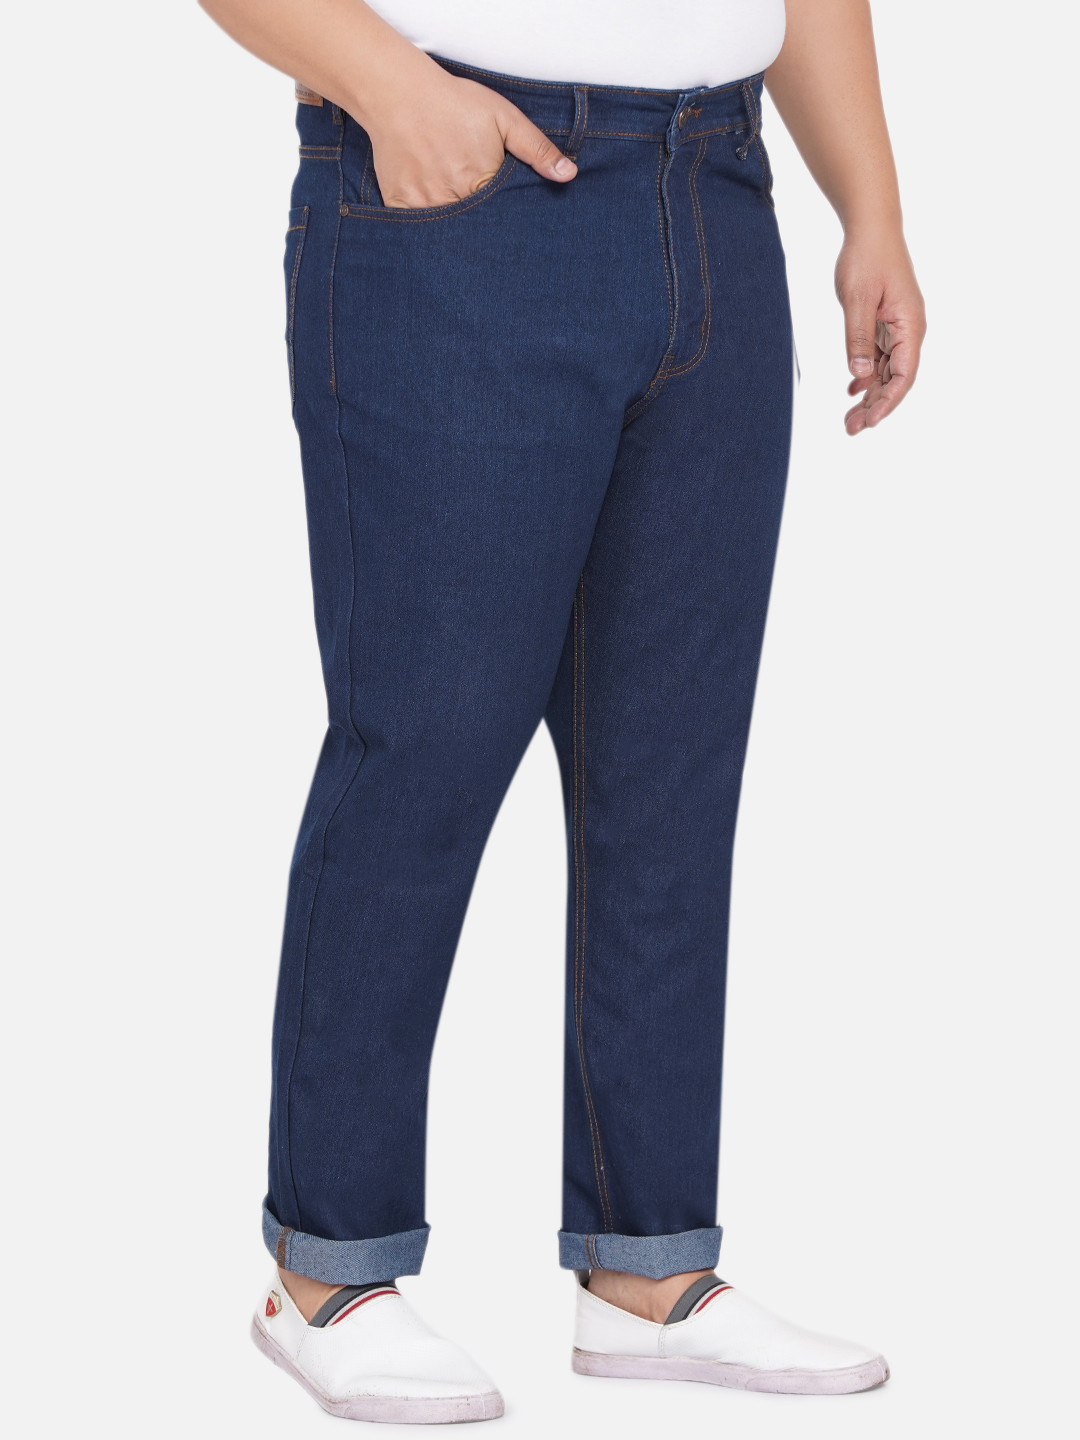 affordables/jeans/JPJ12060G/jpj12060g-3.jpg